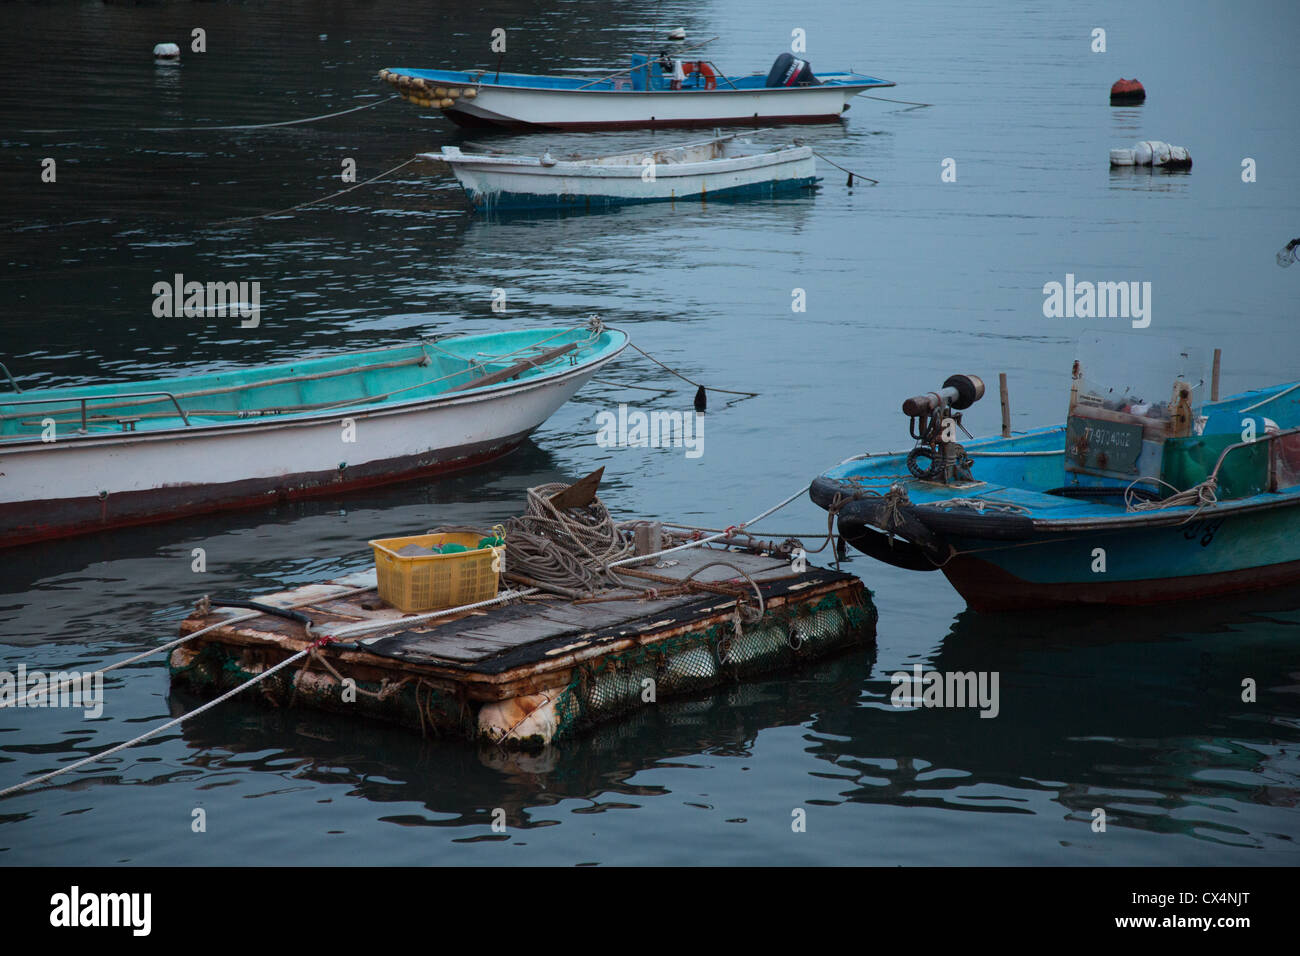 Fishing boats in Korea at dusk Stock Photo